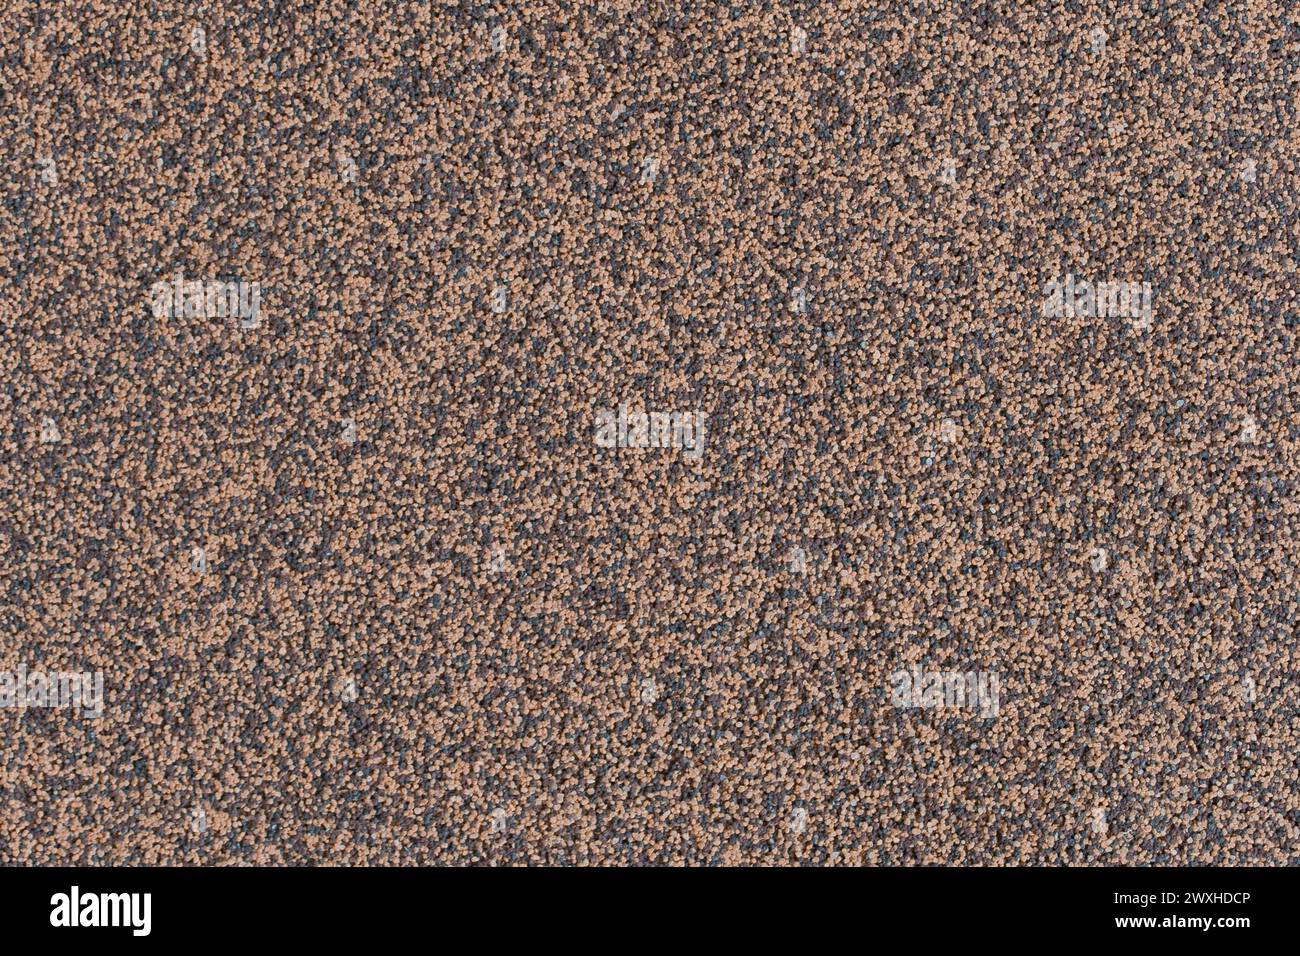 Marmor Gebäudeveredelung Baumaterial Krume Detailliert Kies Körnung Grobe Textur Oberfläche Rauer Hintergrund Braun Wand Grunge. Stockfoto